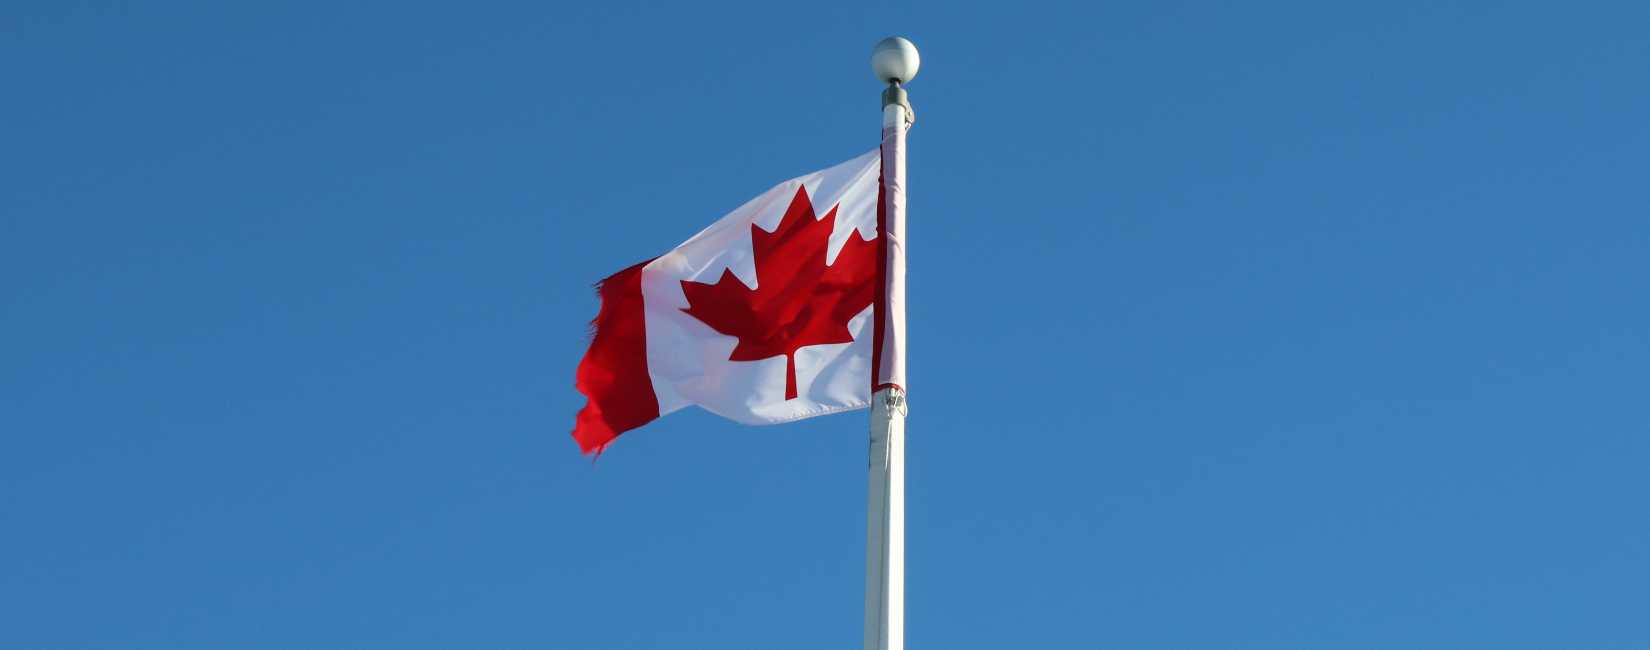 Canada flagg